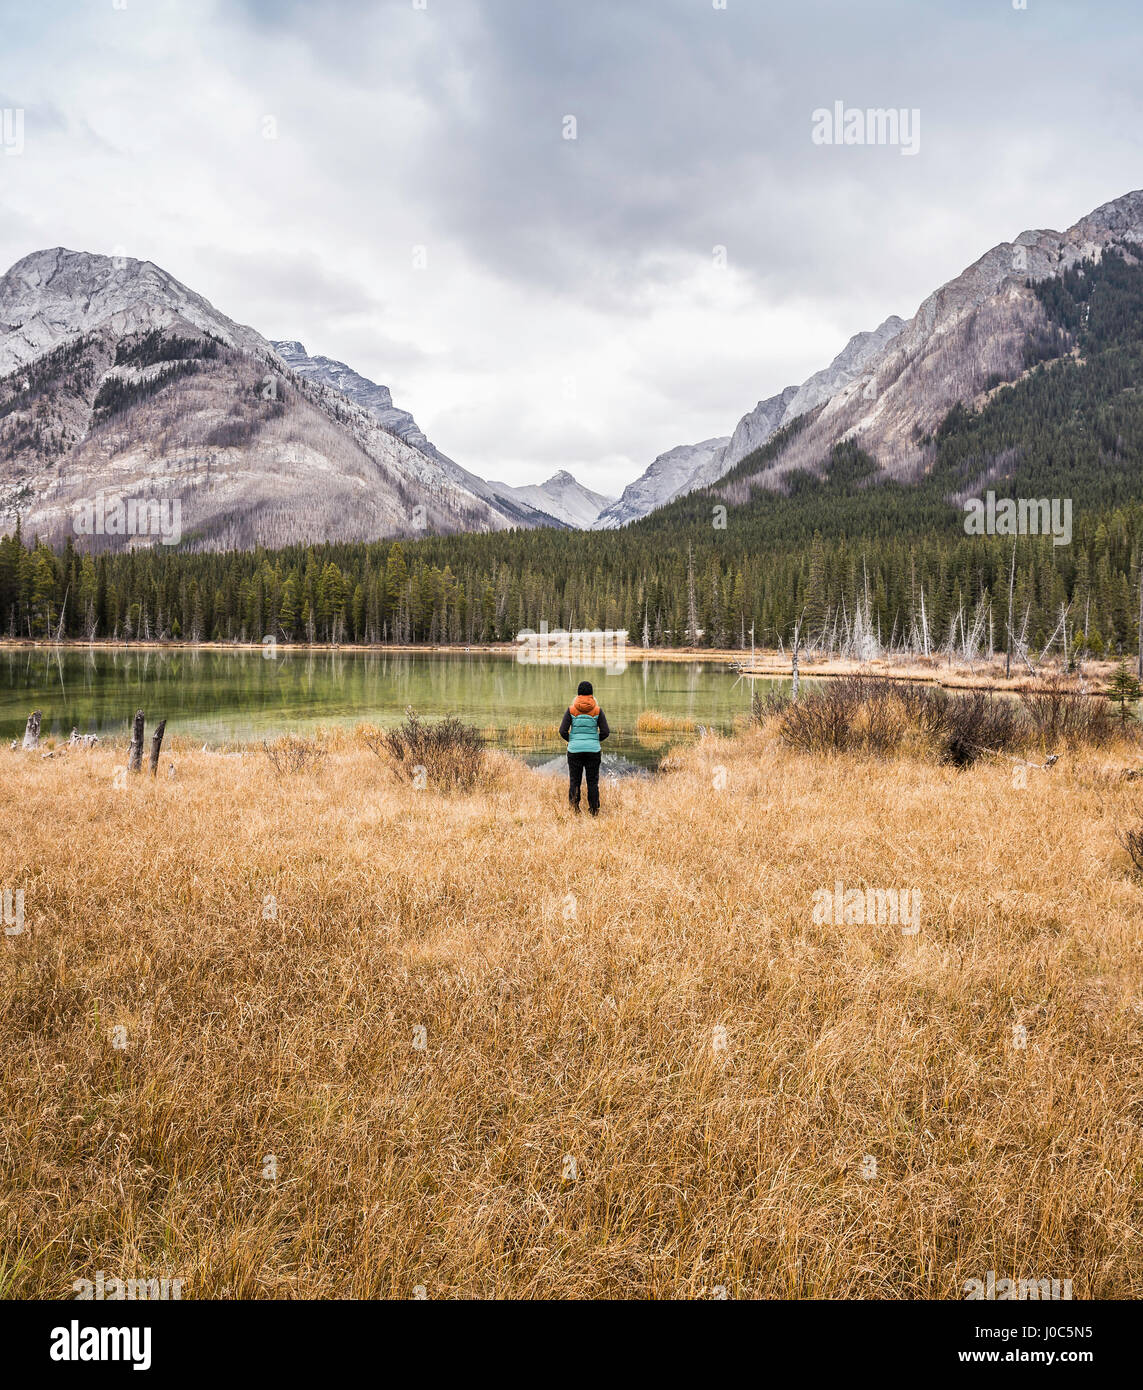 Femme debout, à la recherche à vue, vue arrière, Kananaskis Country, le parc provincial de Bow Valley, Kananaskis, Alberta, Canada Banque D'Images